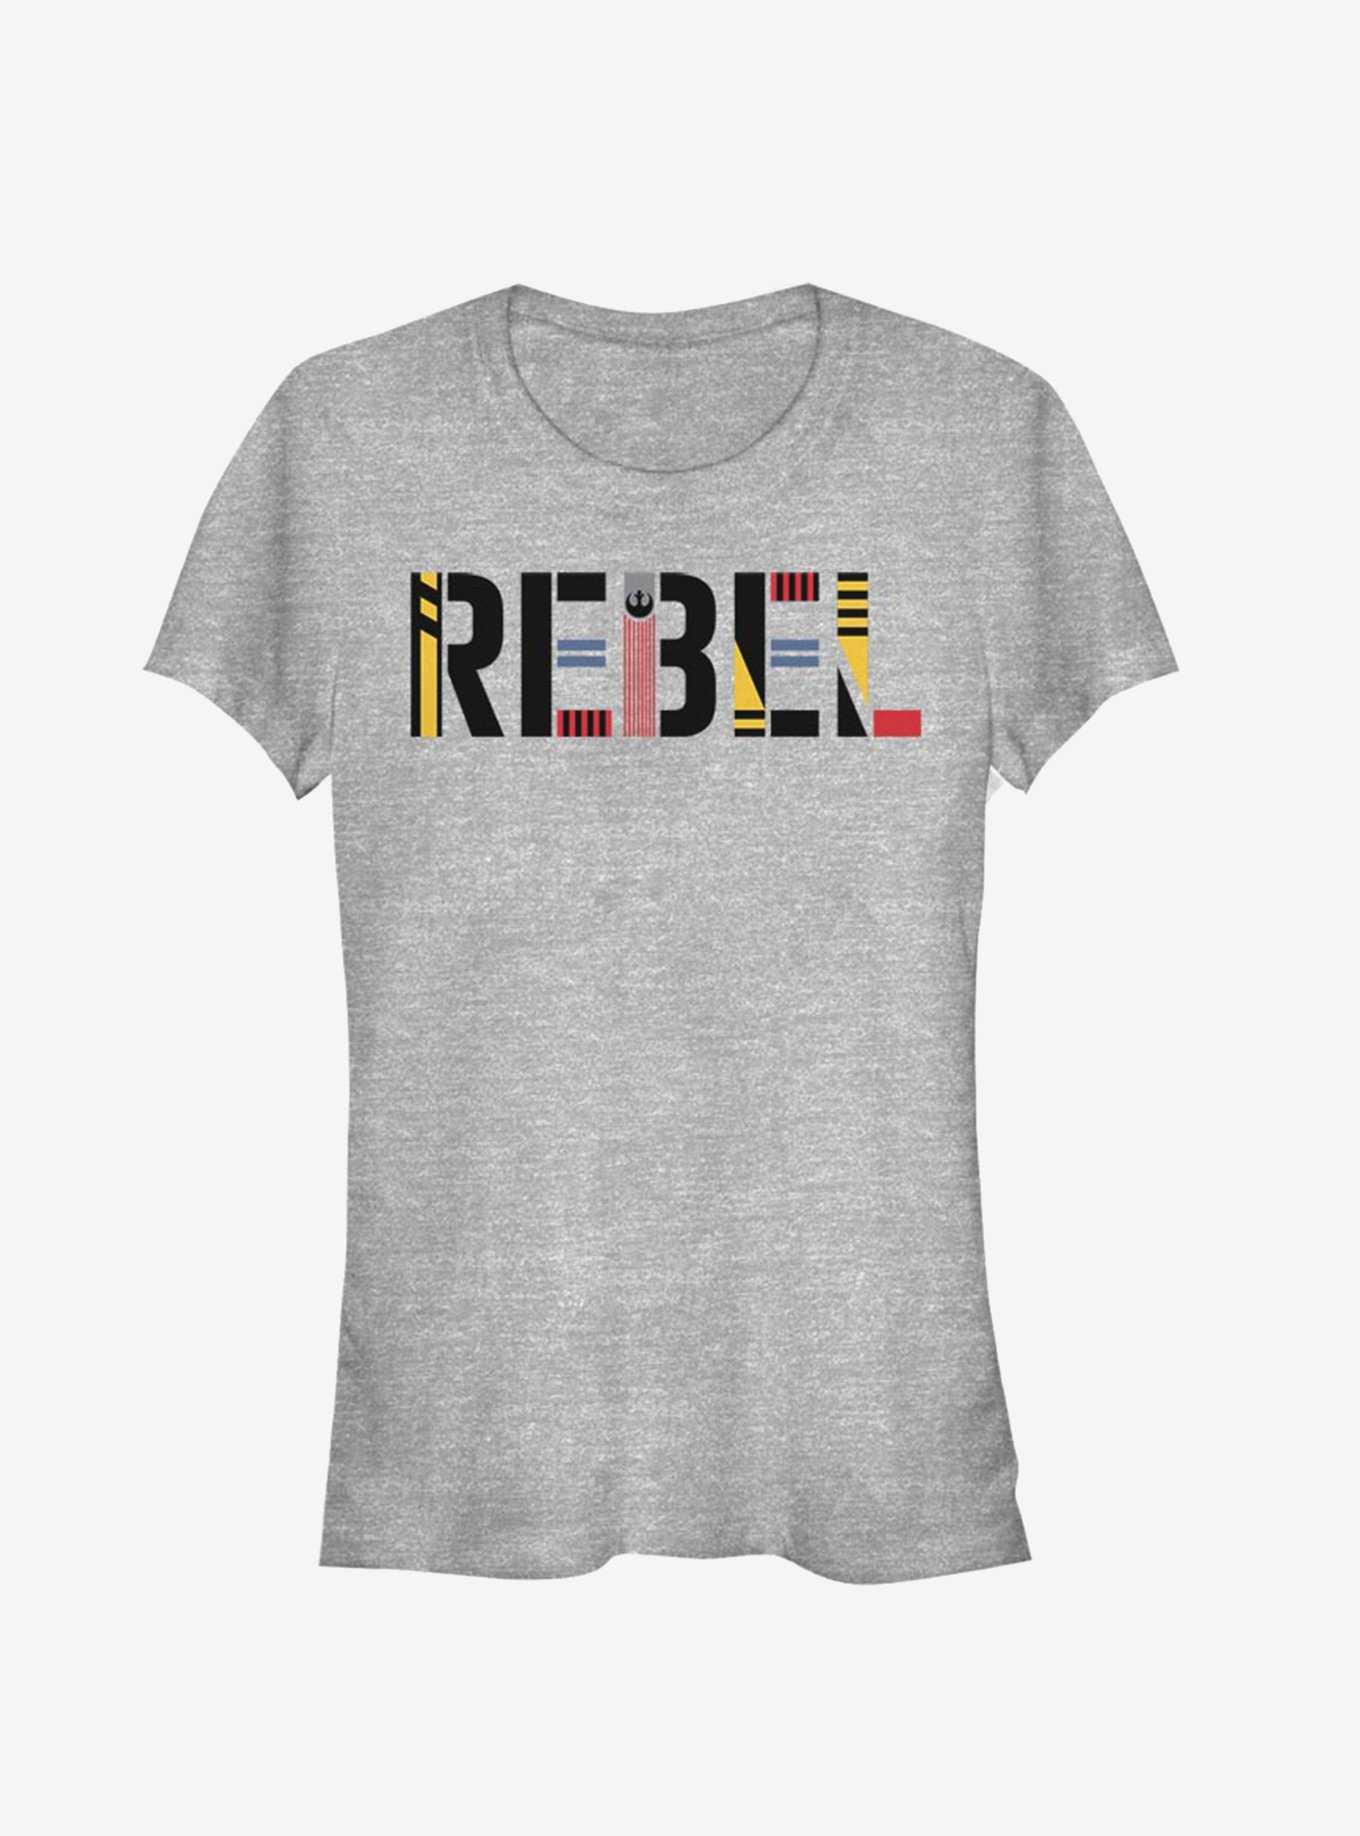 Star Wars Episode IX The Rise Of Skywalker Rebel Simple Girls T-Shirt, , hi-res